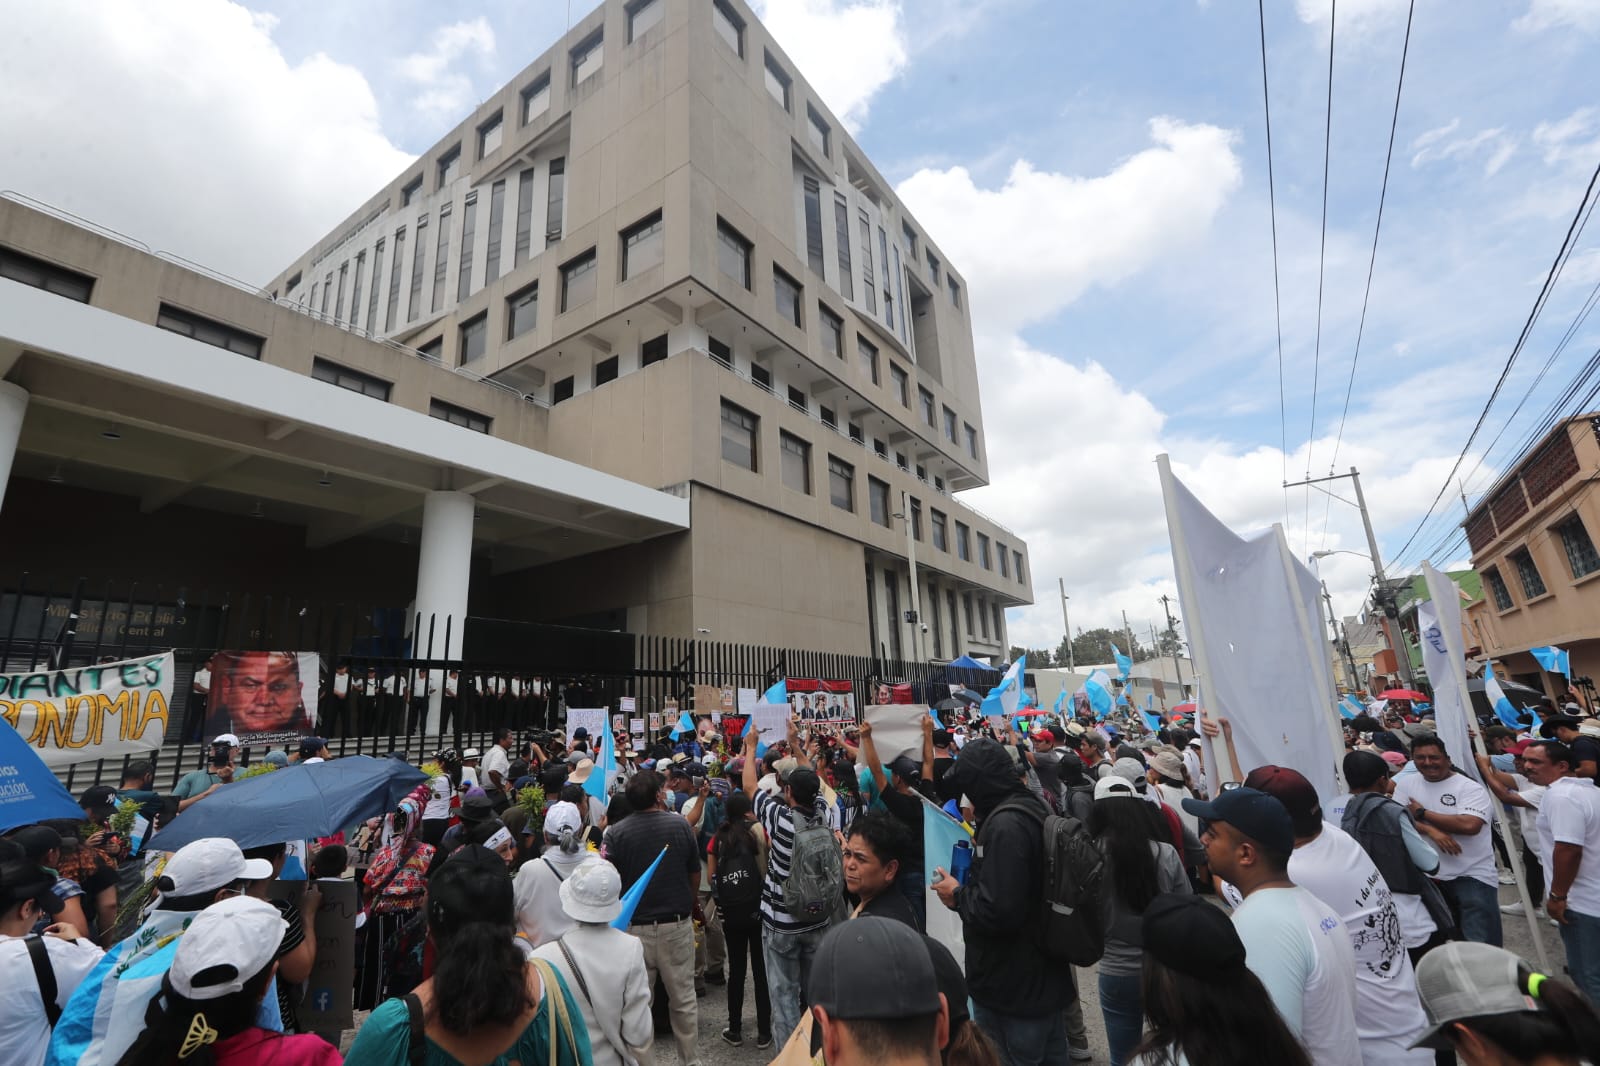 La manifestación de este 23 de julio concluyó frente a la sede del Ministerio Público, donde con distintas consignas los guatemaltecos pidieron la renuncia de la Fiscal General Consuelo Porras. (Foto Prensa Libre: Elmer Vargas)